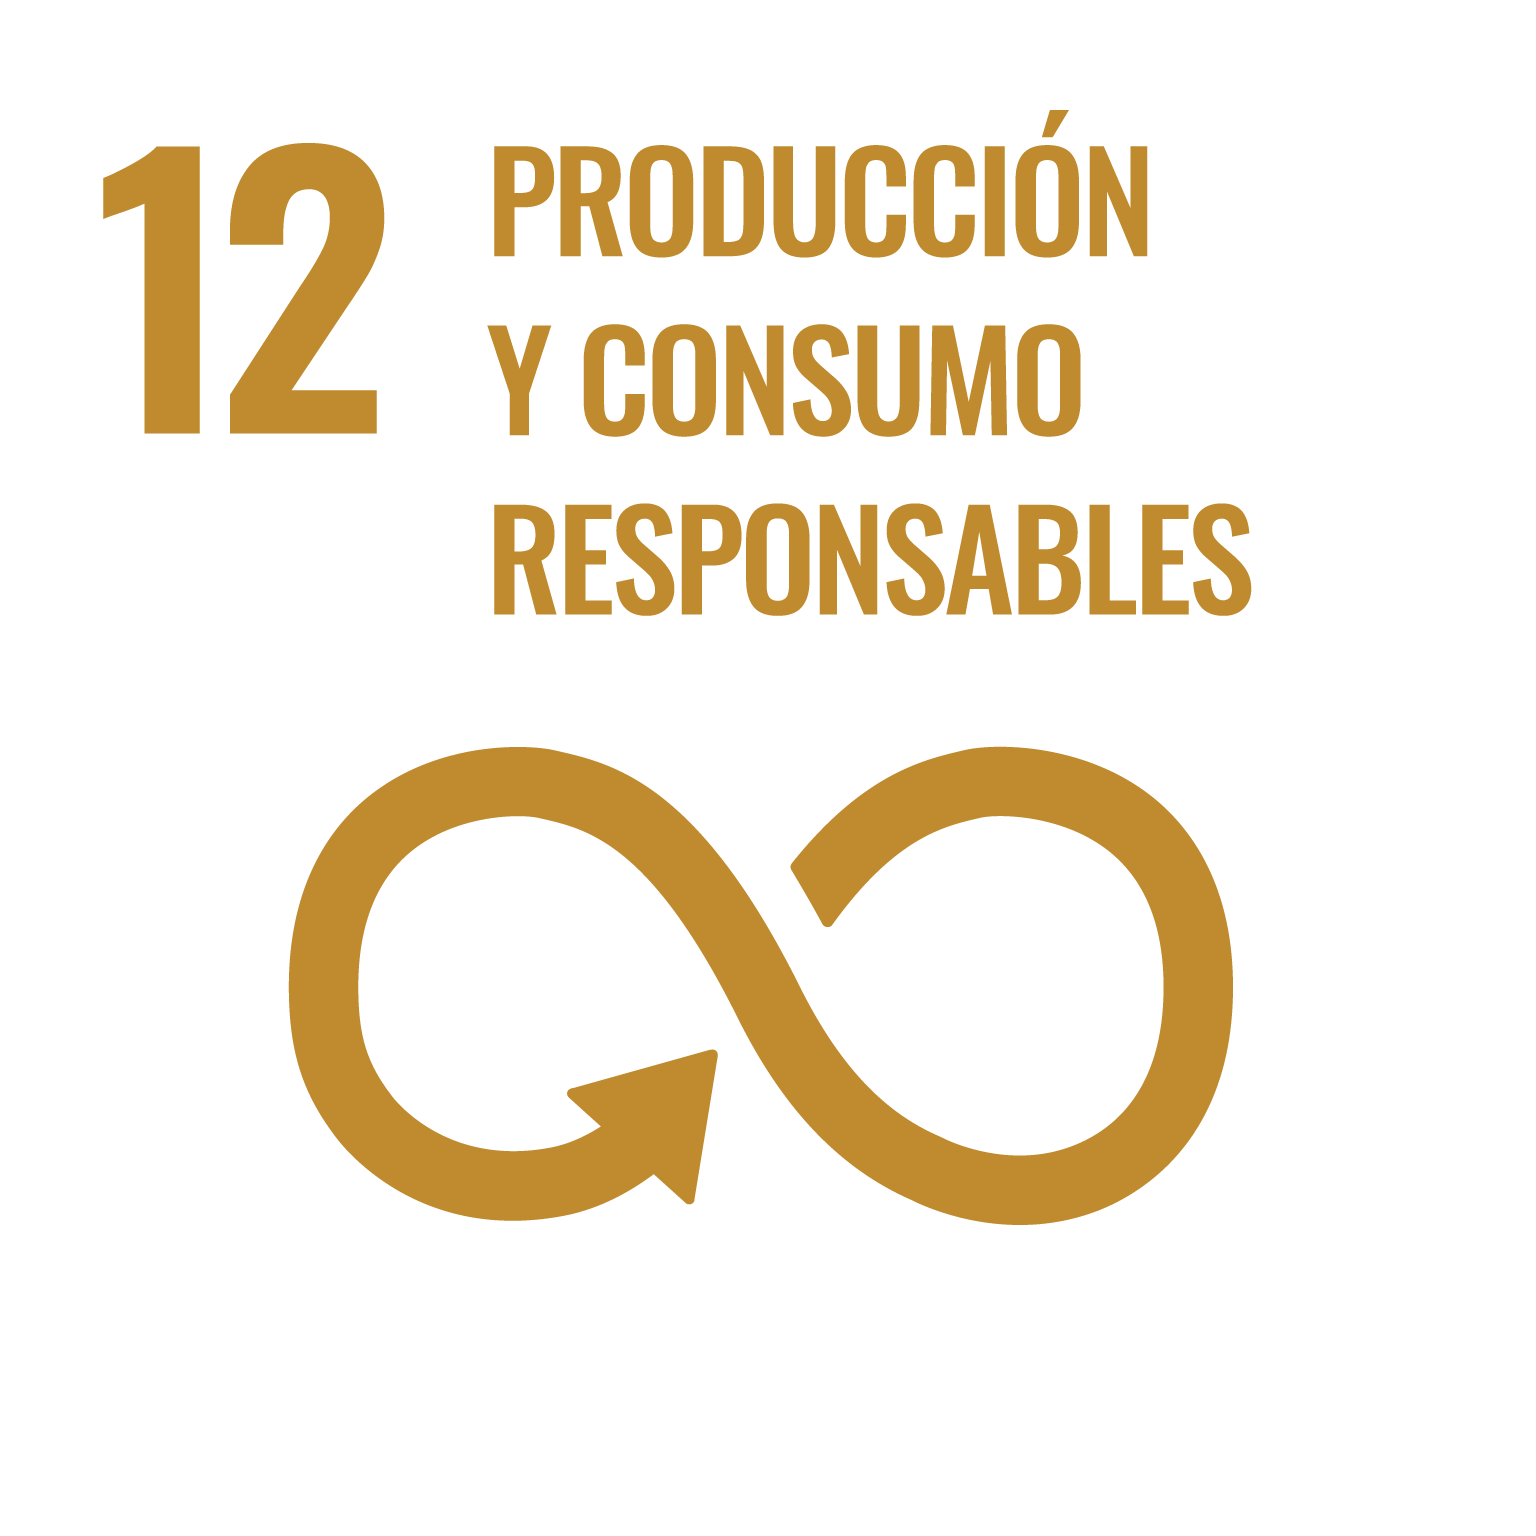 12. Producción y consumo responsables